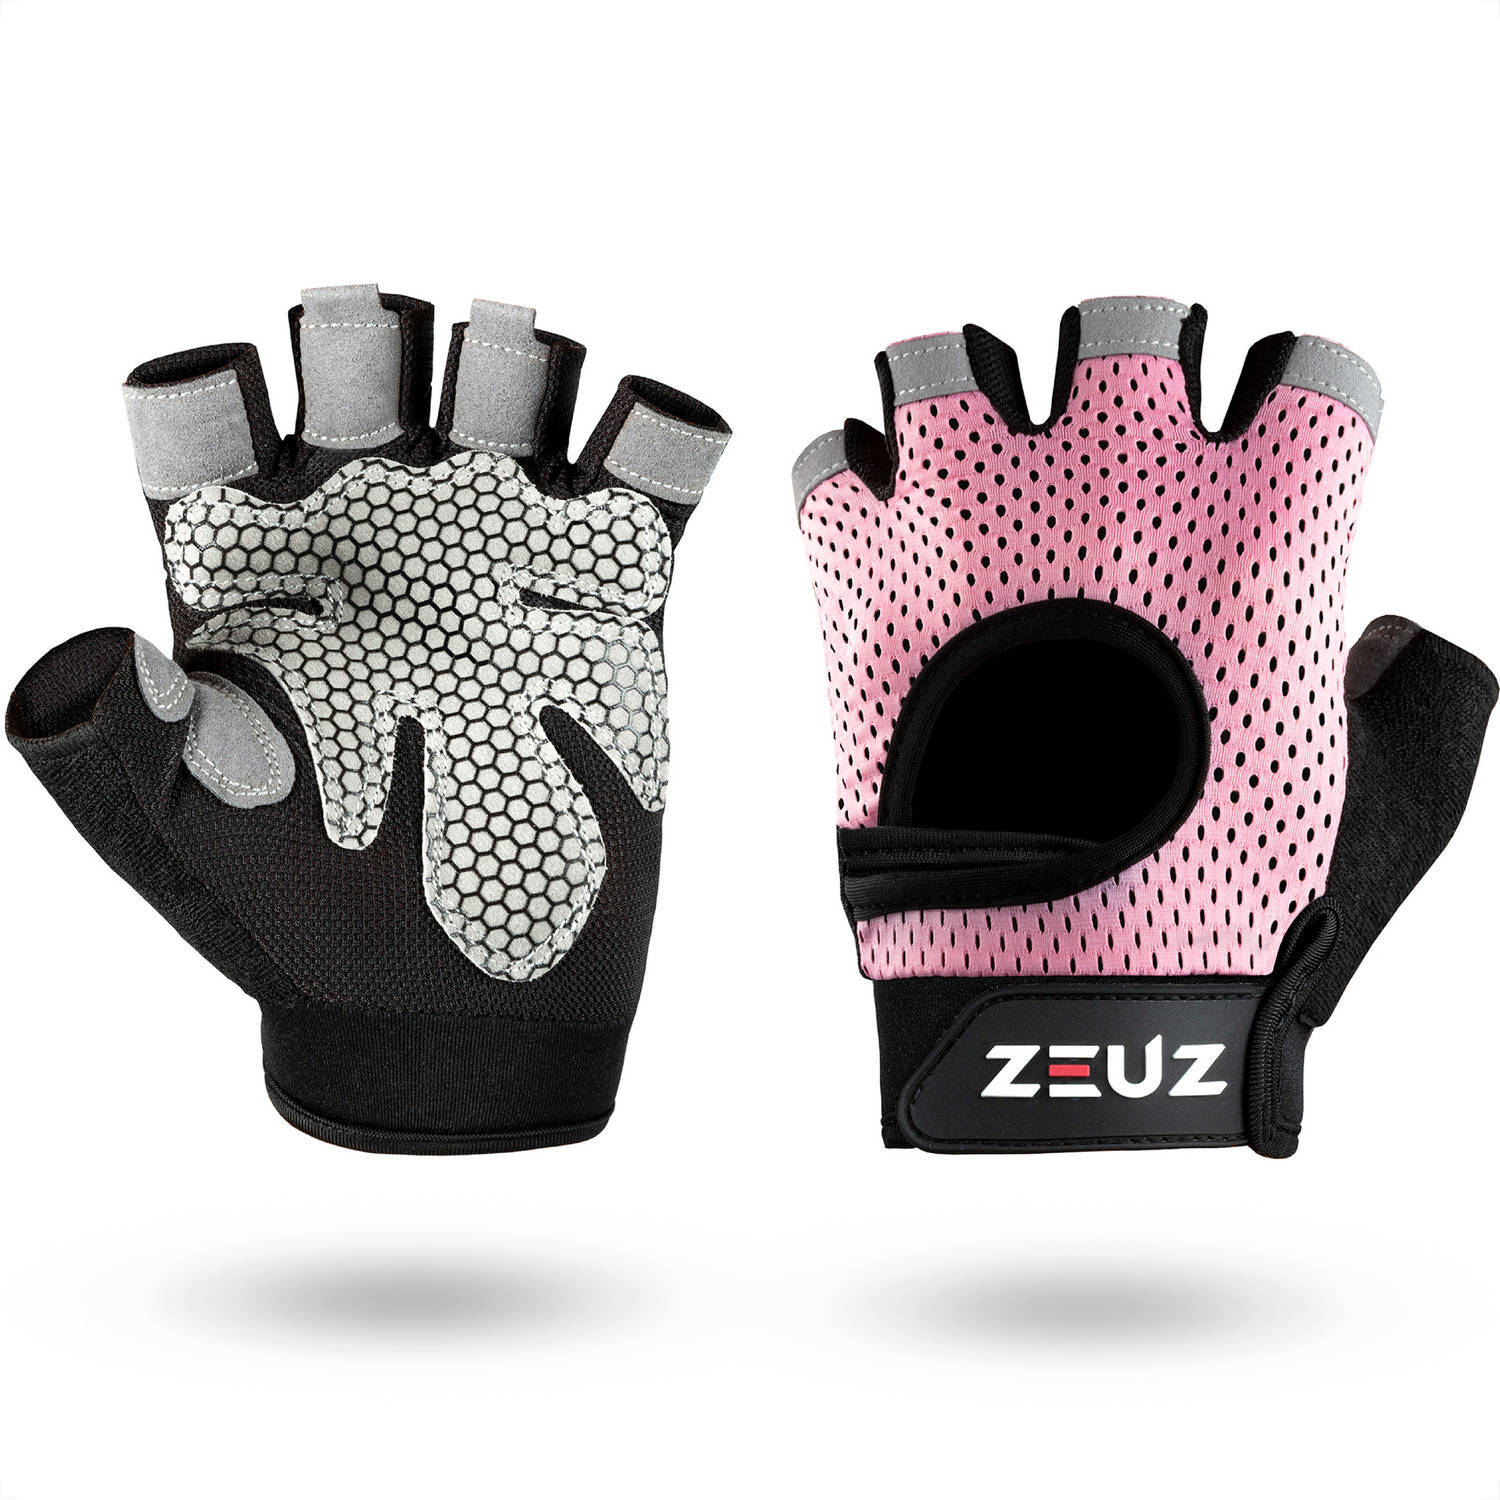 ZEUZ ZEUZ® Sport & Fitness Handschoenen Dames – Krachttraining Artikelen – Gym & Crossfit Training – Roze & Zwart – Gloves voor meer grip en bescherming tegen blaren & eelt - Maat M